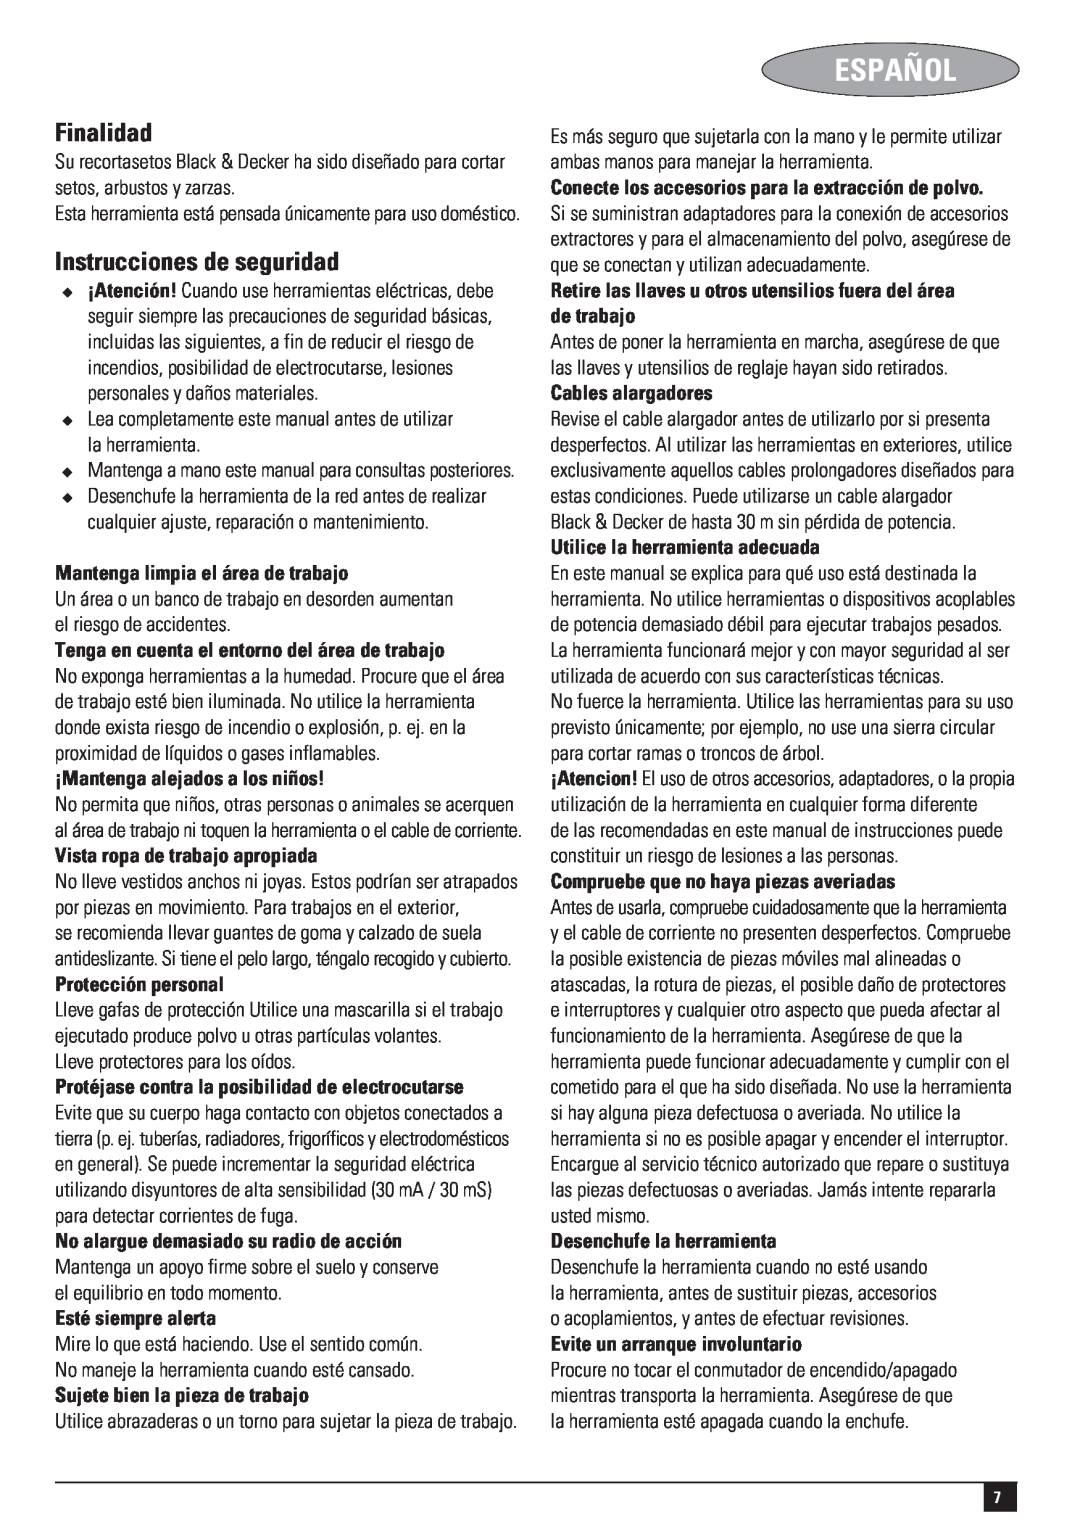 Black & Decker 477435-02-PDF1, HT420 instruction manual Español, Finalidad, Instrucciones de seguridad 